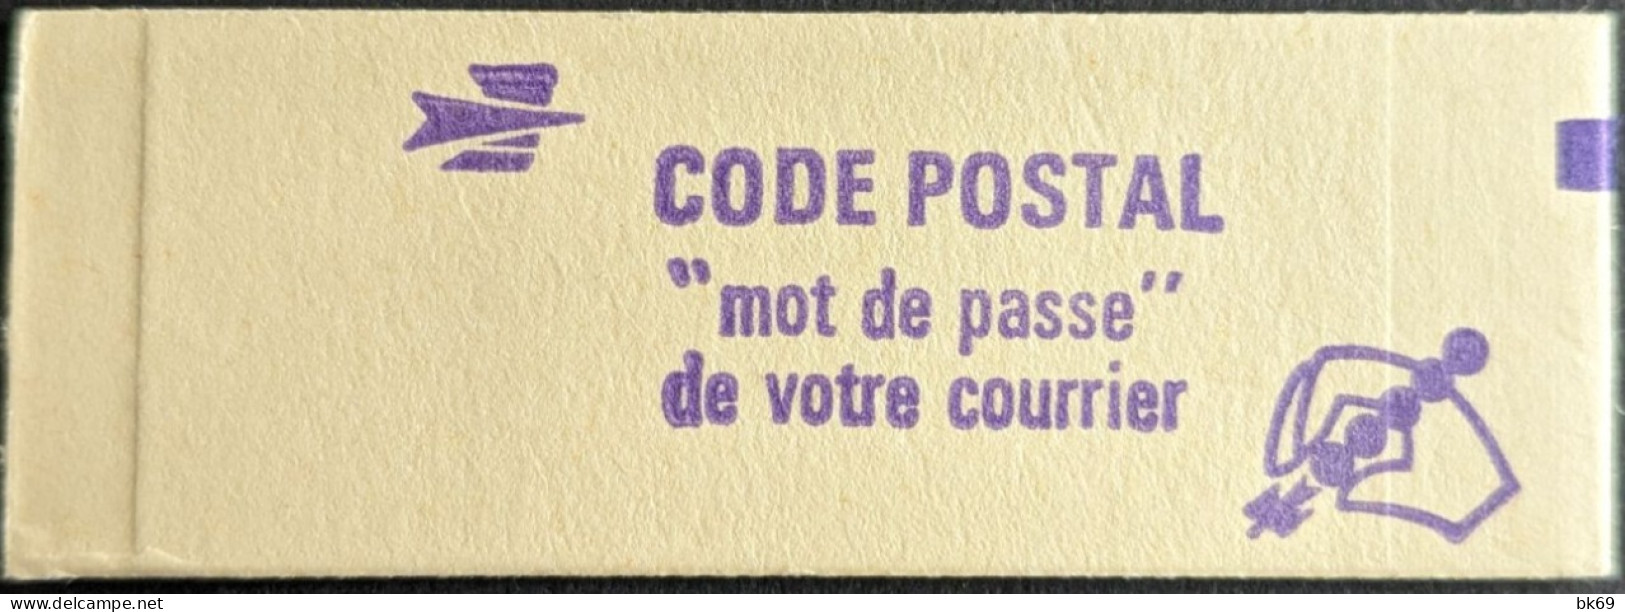 1972 C1a Conf. - Gomme Mate Tropical Carnet Fermé Sabine 1F Rouge Cote 44€ - Moderne : 1959-...